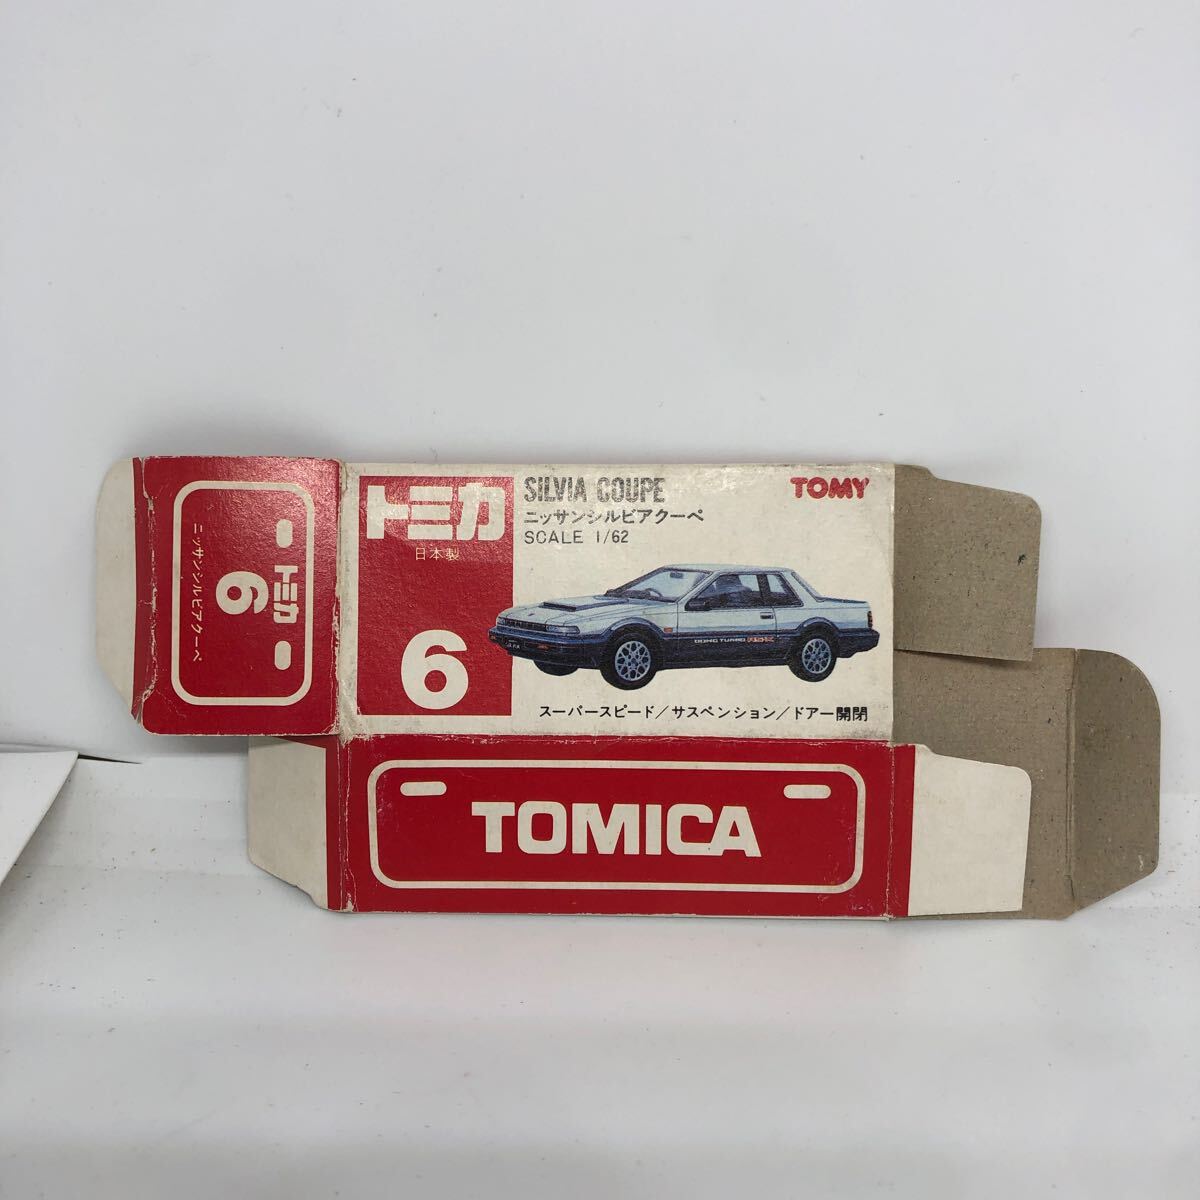  Tomica сделано в Японии красный коробка пустой коробка 6 Ниссан Silvia купе подлинная вещь распроданный 